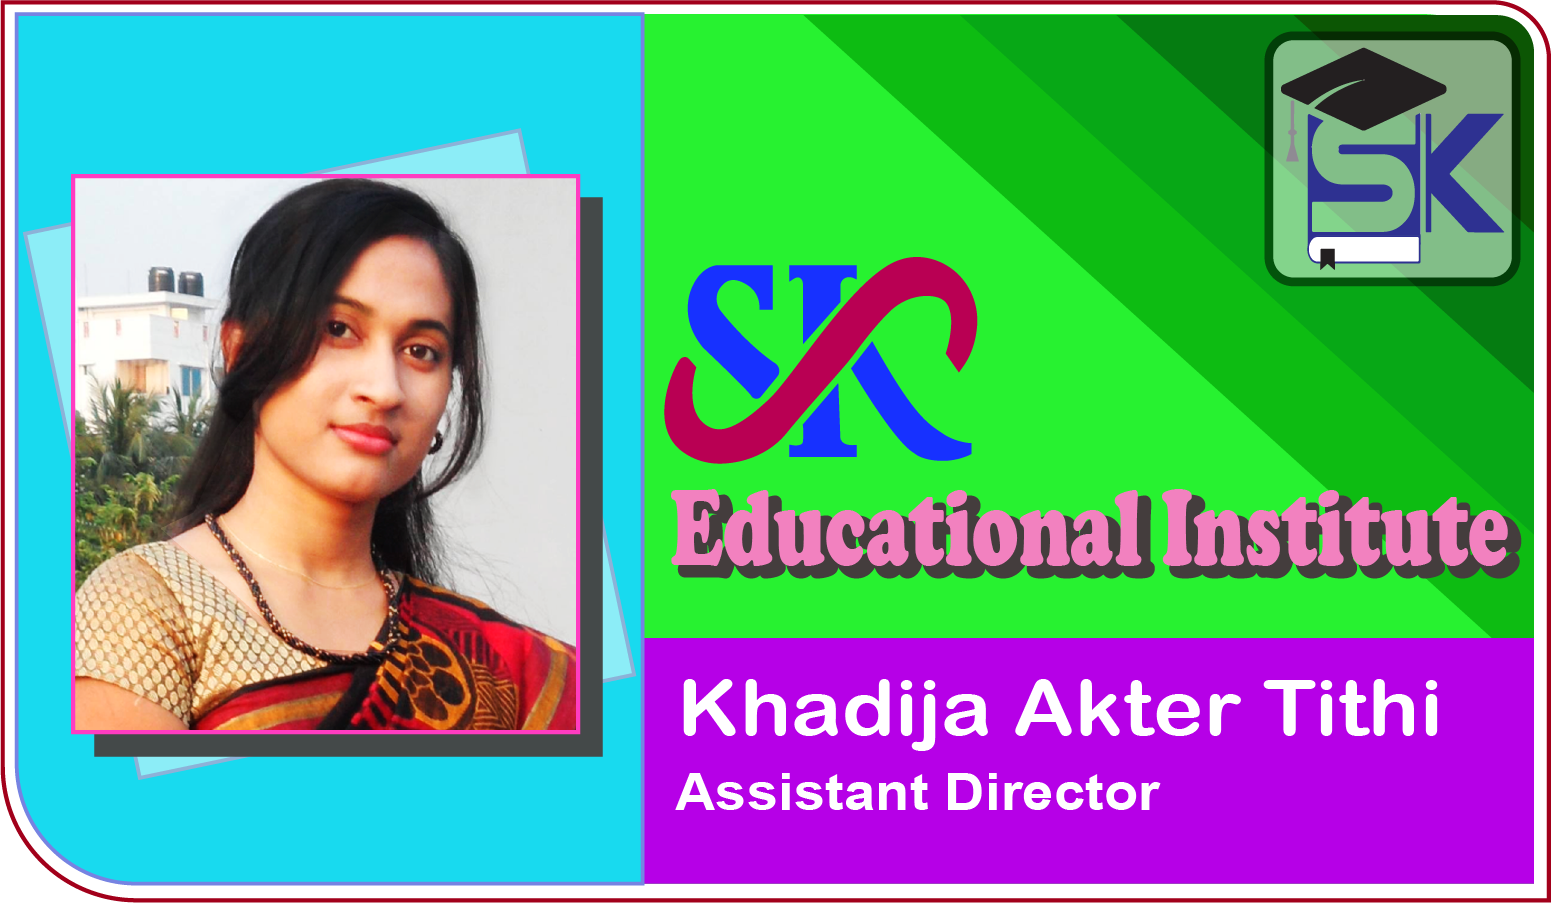 SK Educational Institute